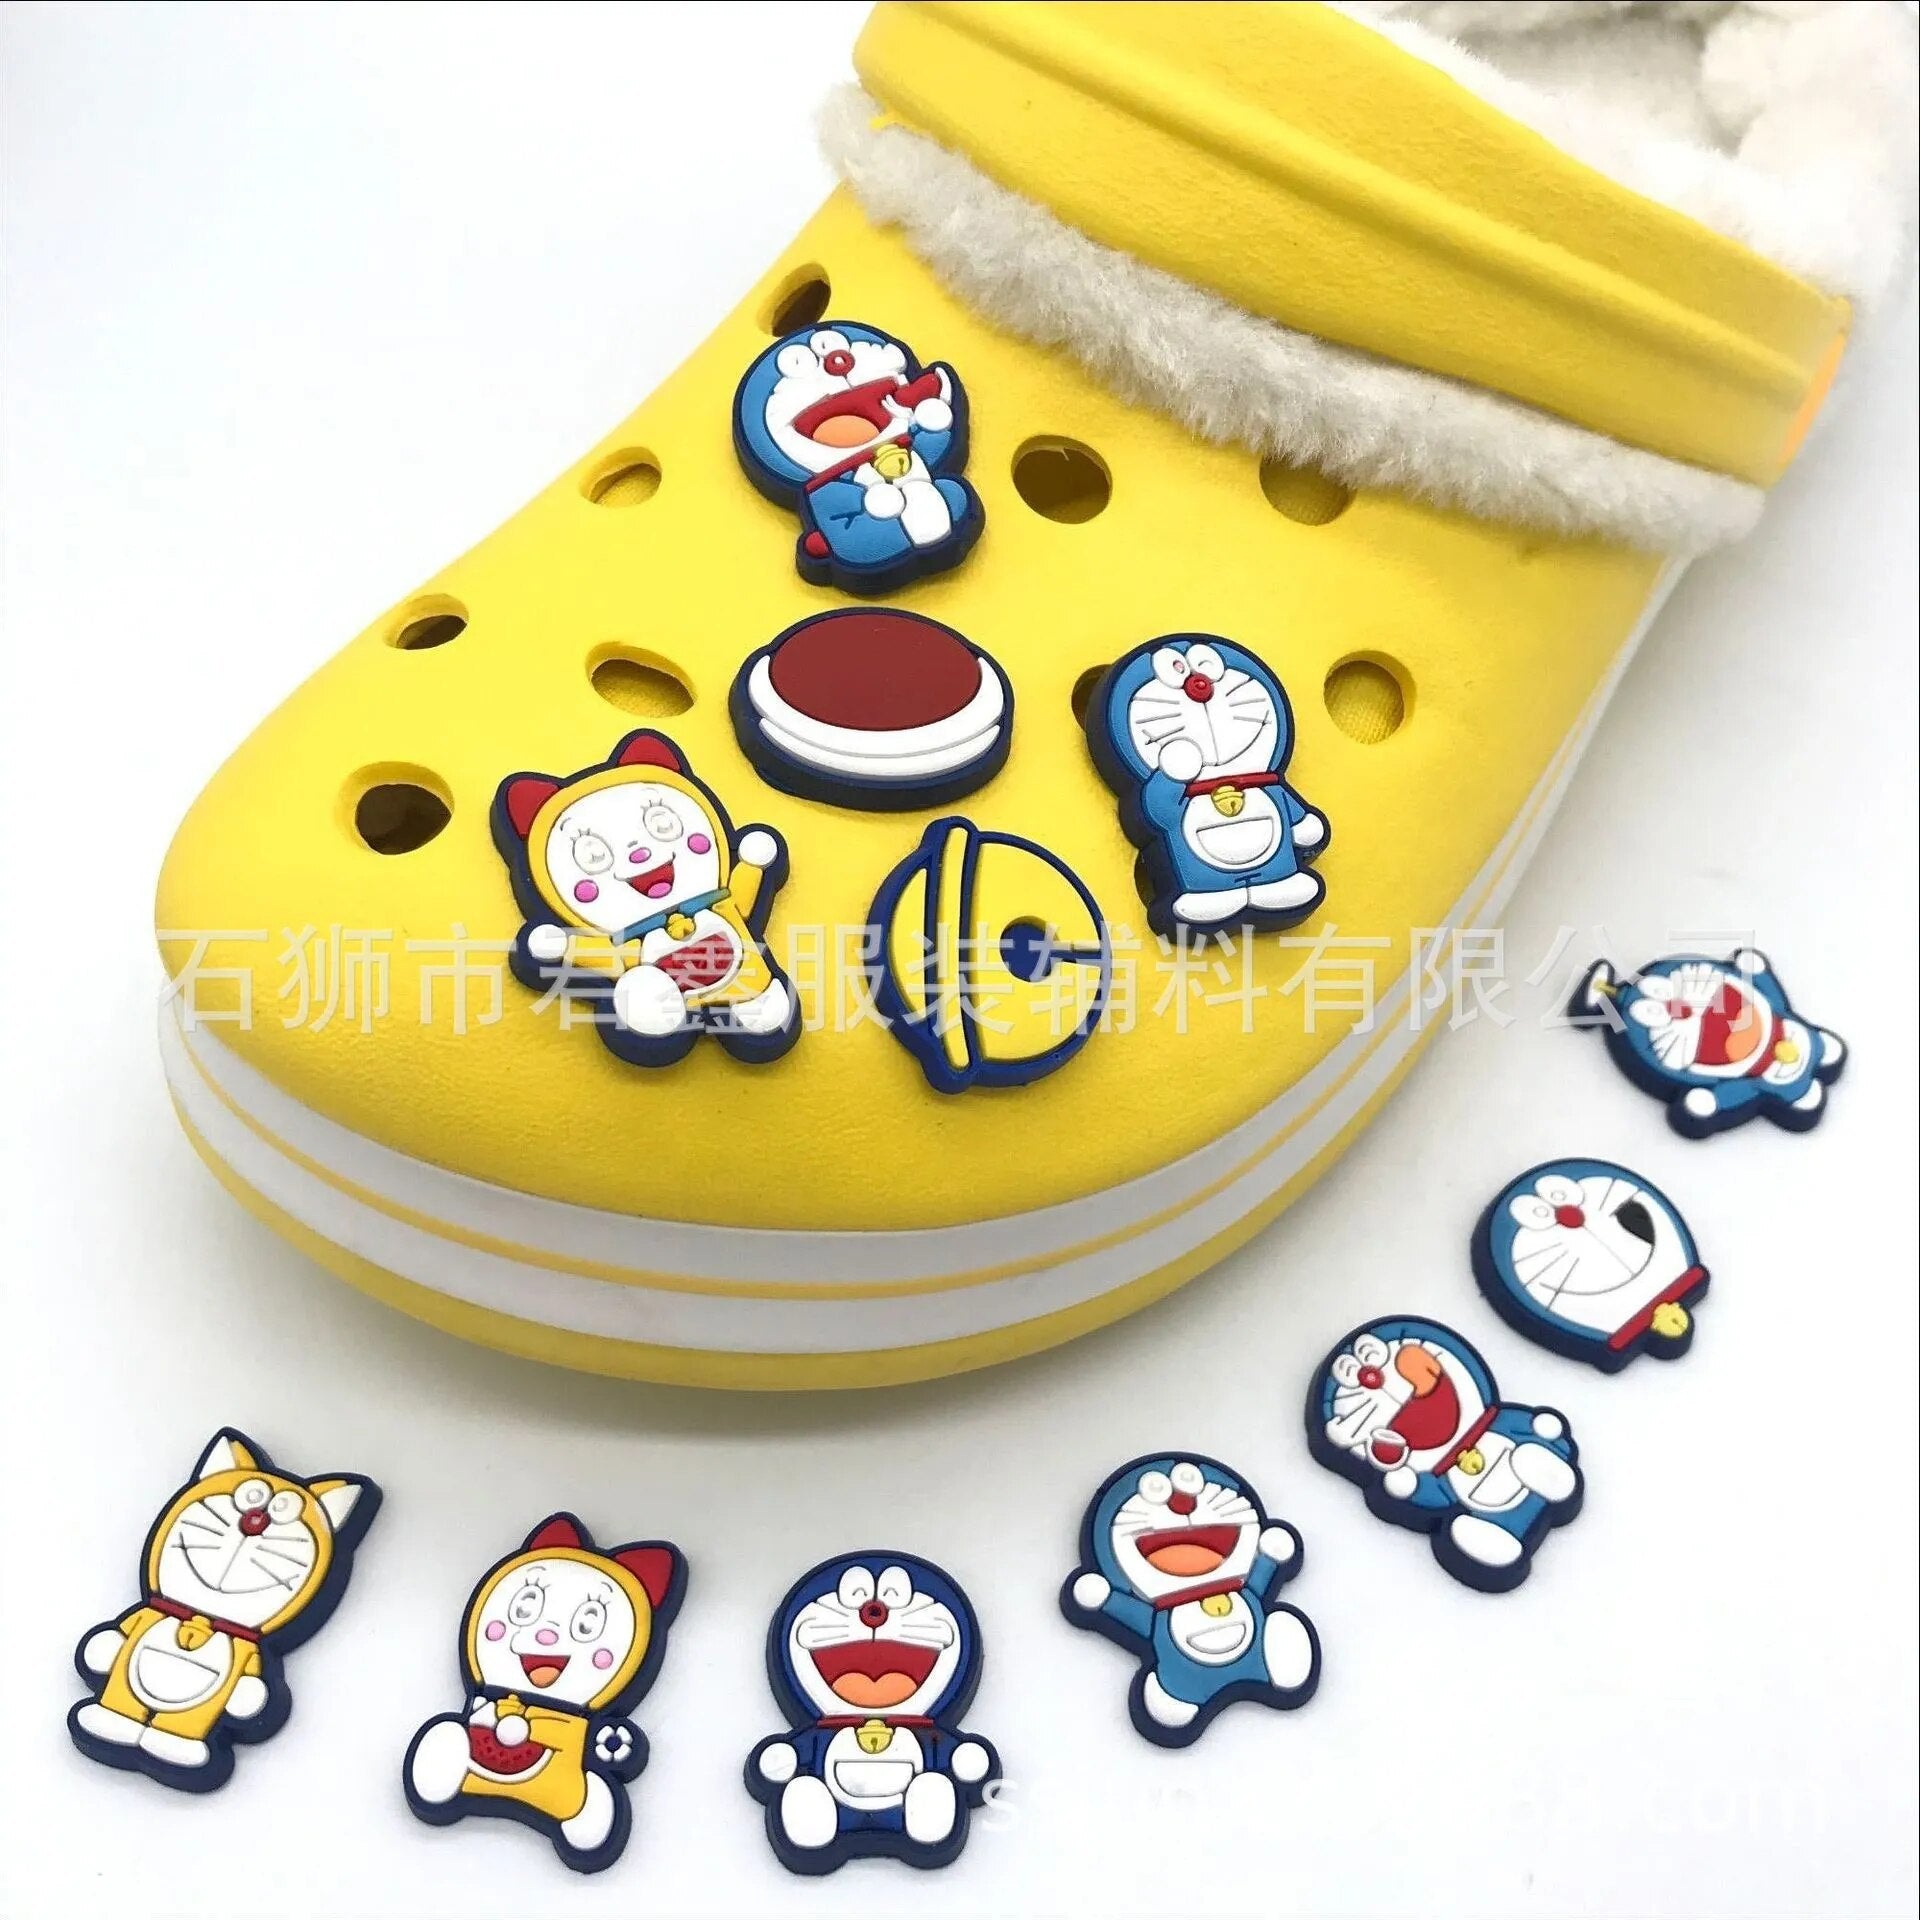 1pcs Single Sale Doraemon Cartoon Shoe Buckle Detachable Sneakers Croc Charms Accessories Decoration